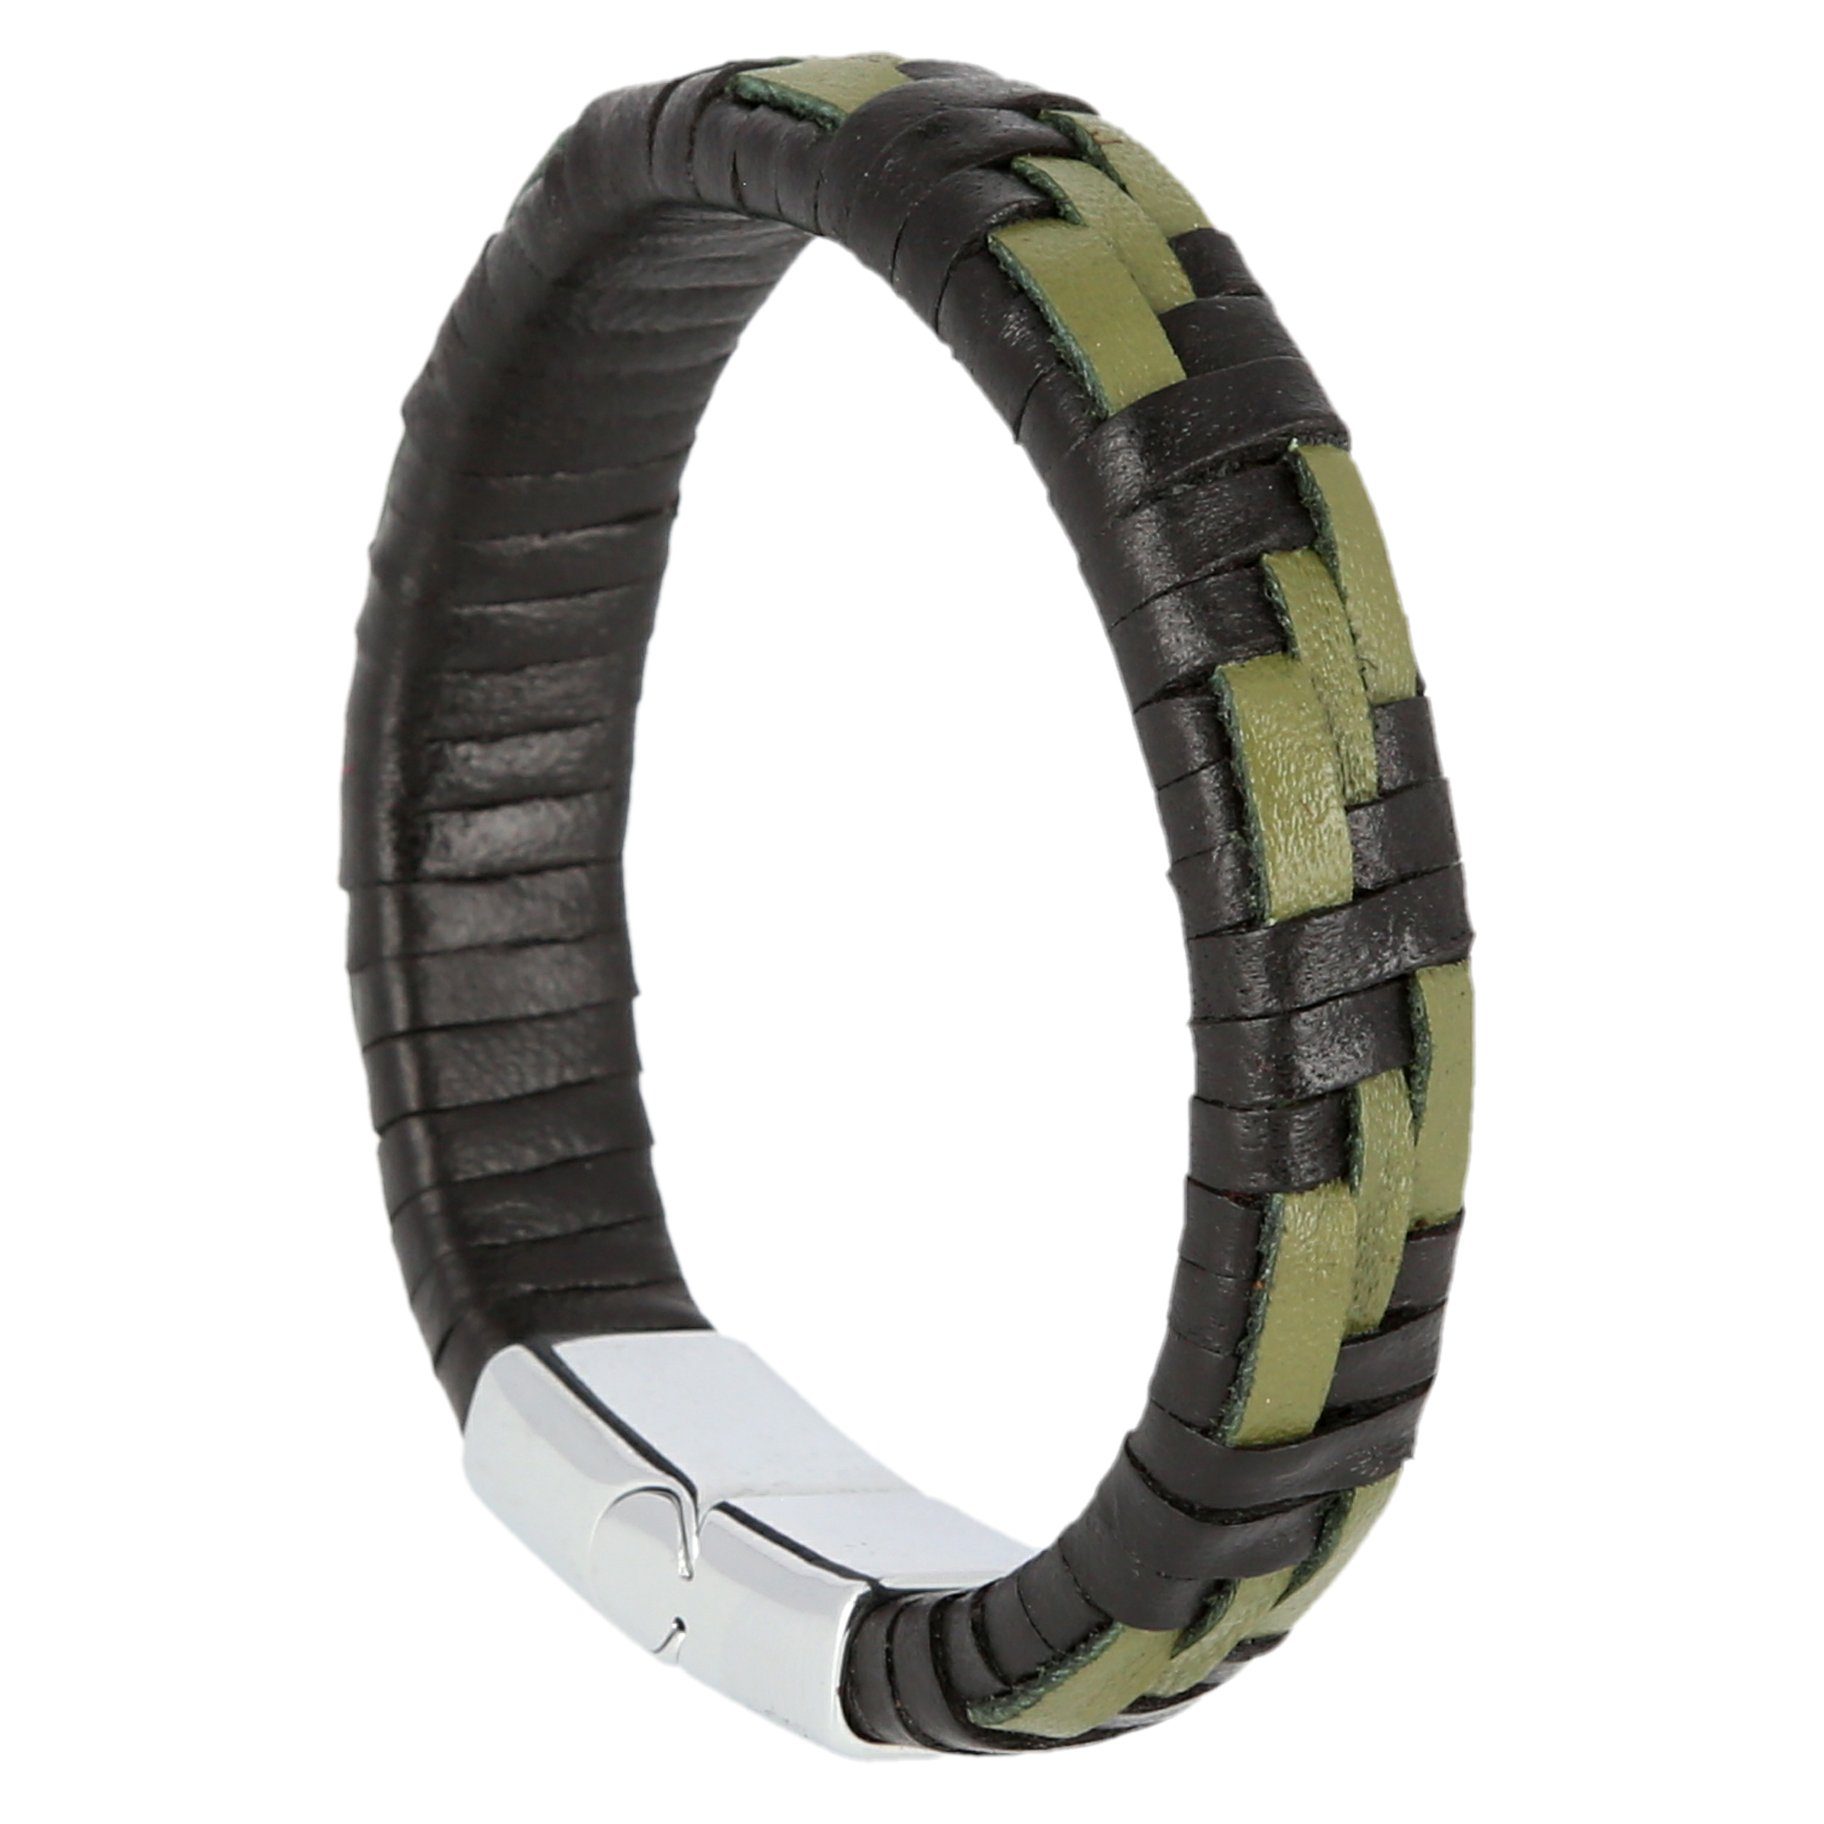 Lantelme Lederarmband Armband echtes Leder mit Magnetverschluss, Klickverschluss 2 farbig Grün